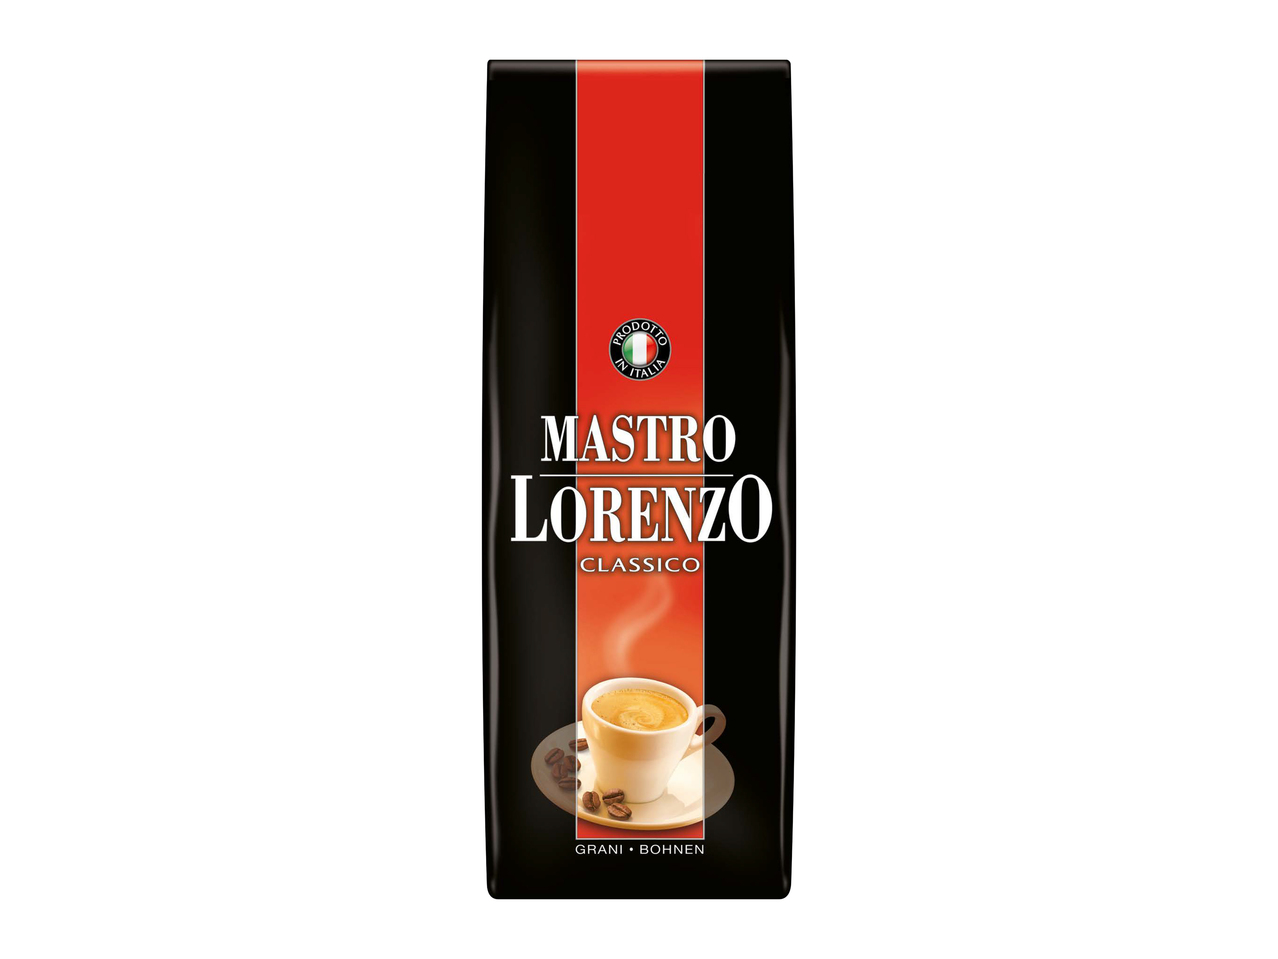 Mastro Lorenzo Classico/ Crema Bohnen